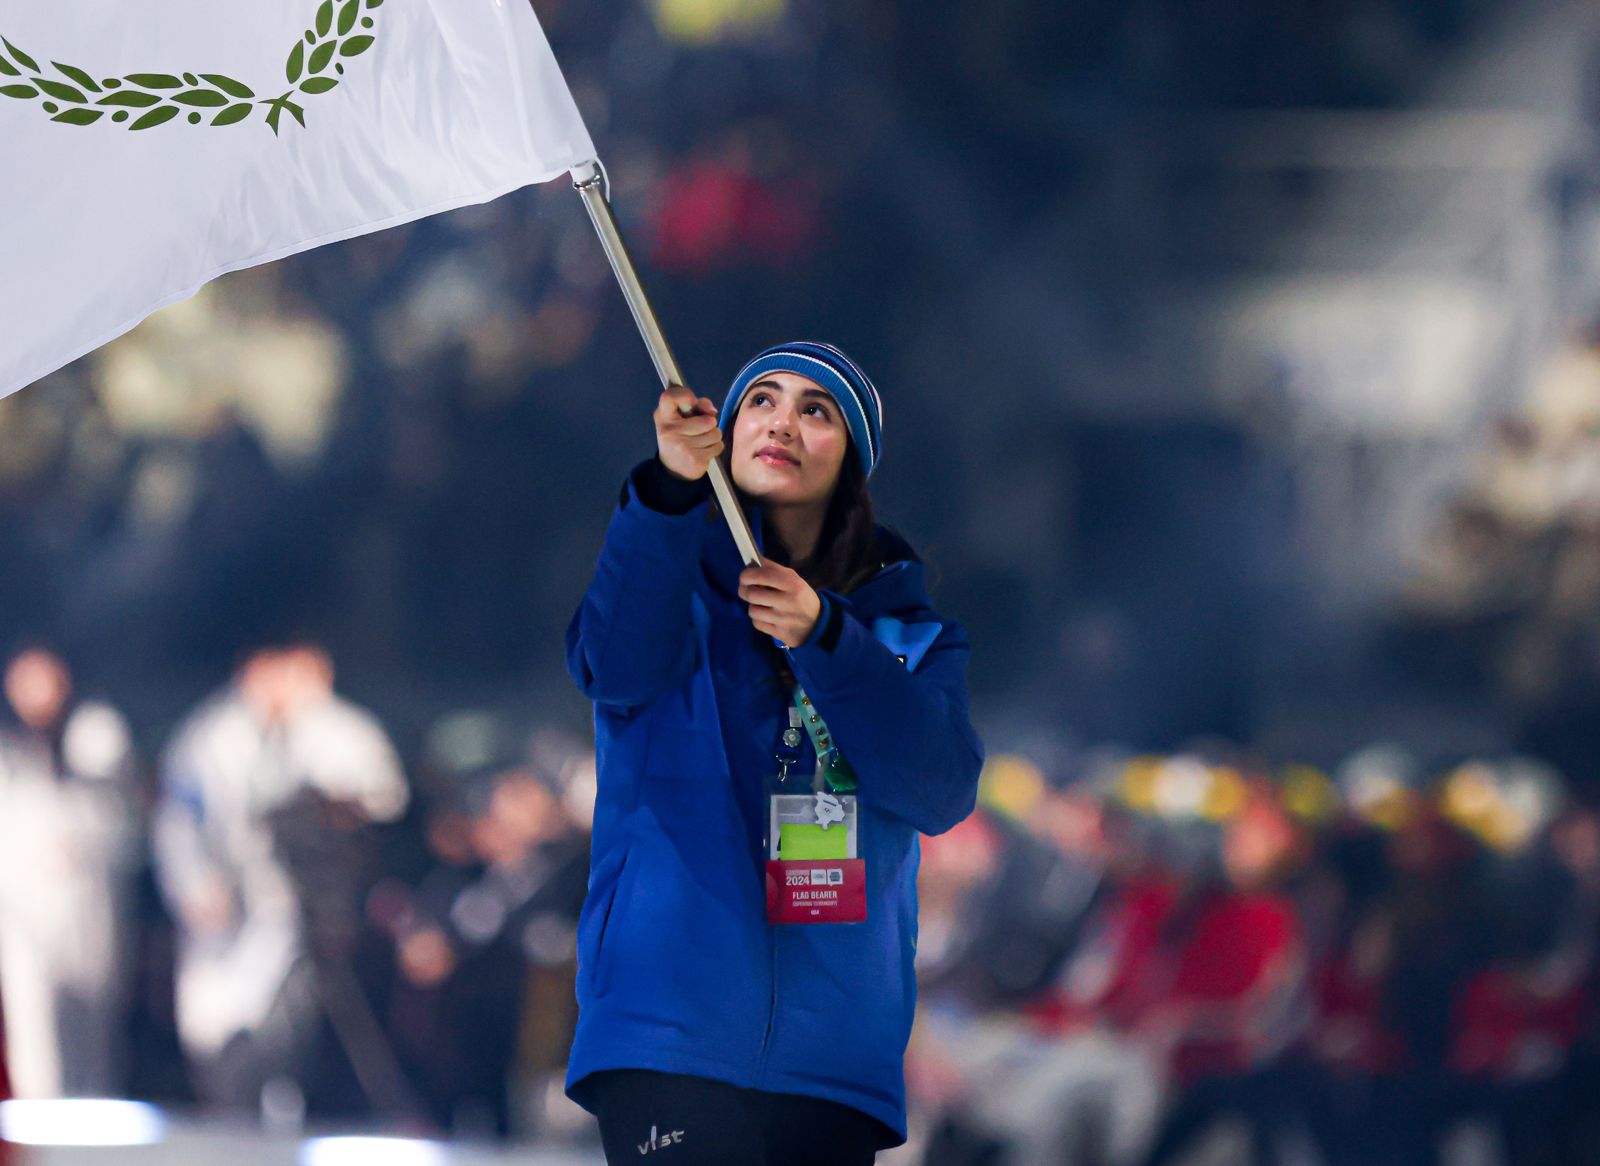 Σημαιοφόρος η Άντρεα Λοϊζίδου στην τελετή έναρξης που πραγματοποιήθηκε στη Νότιο Κορέα